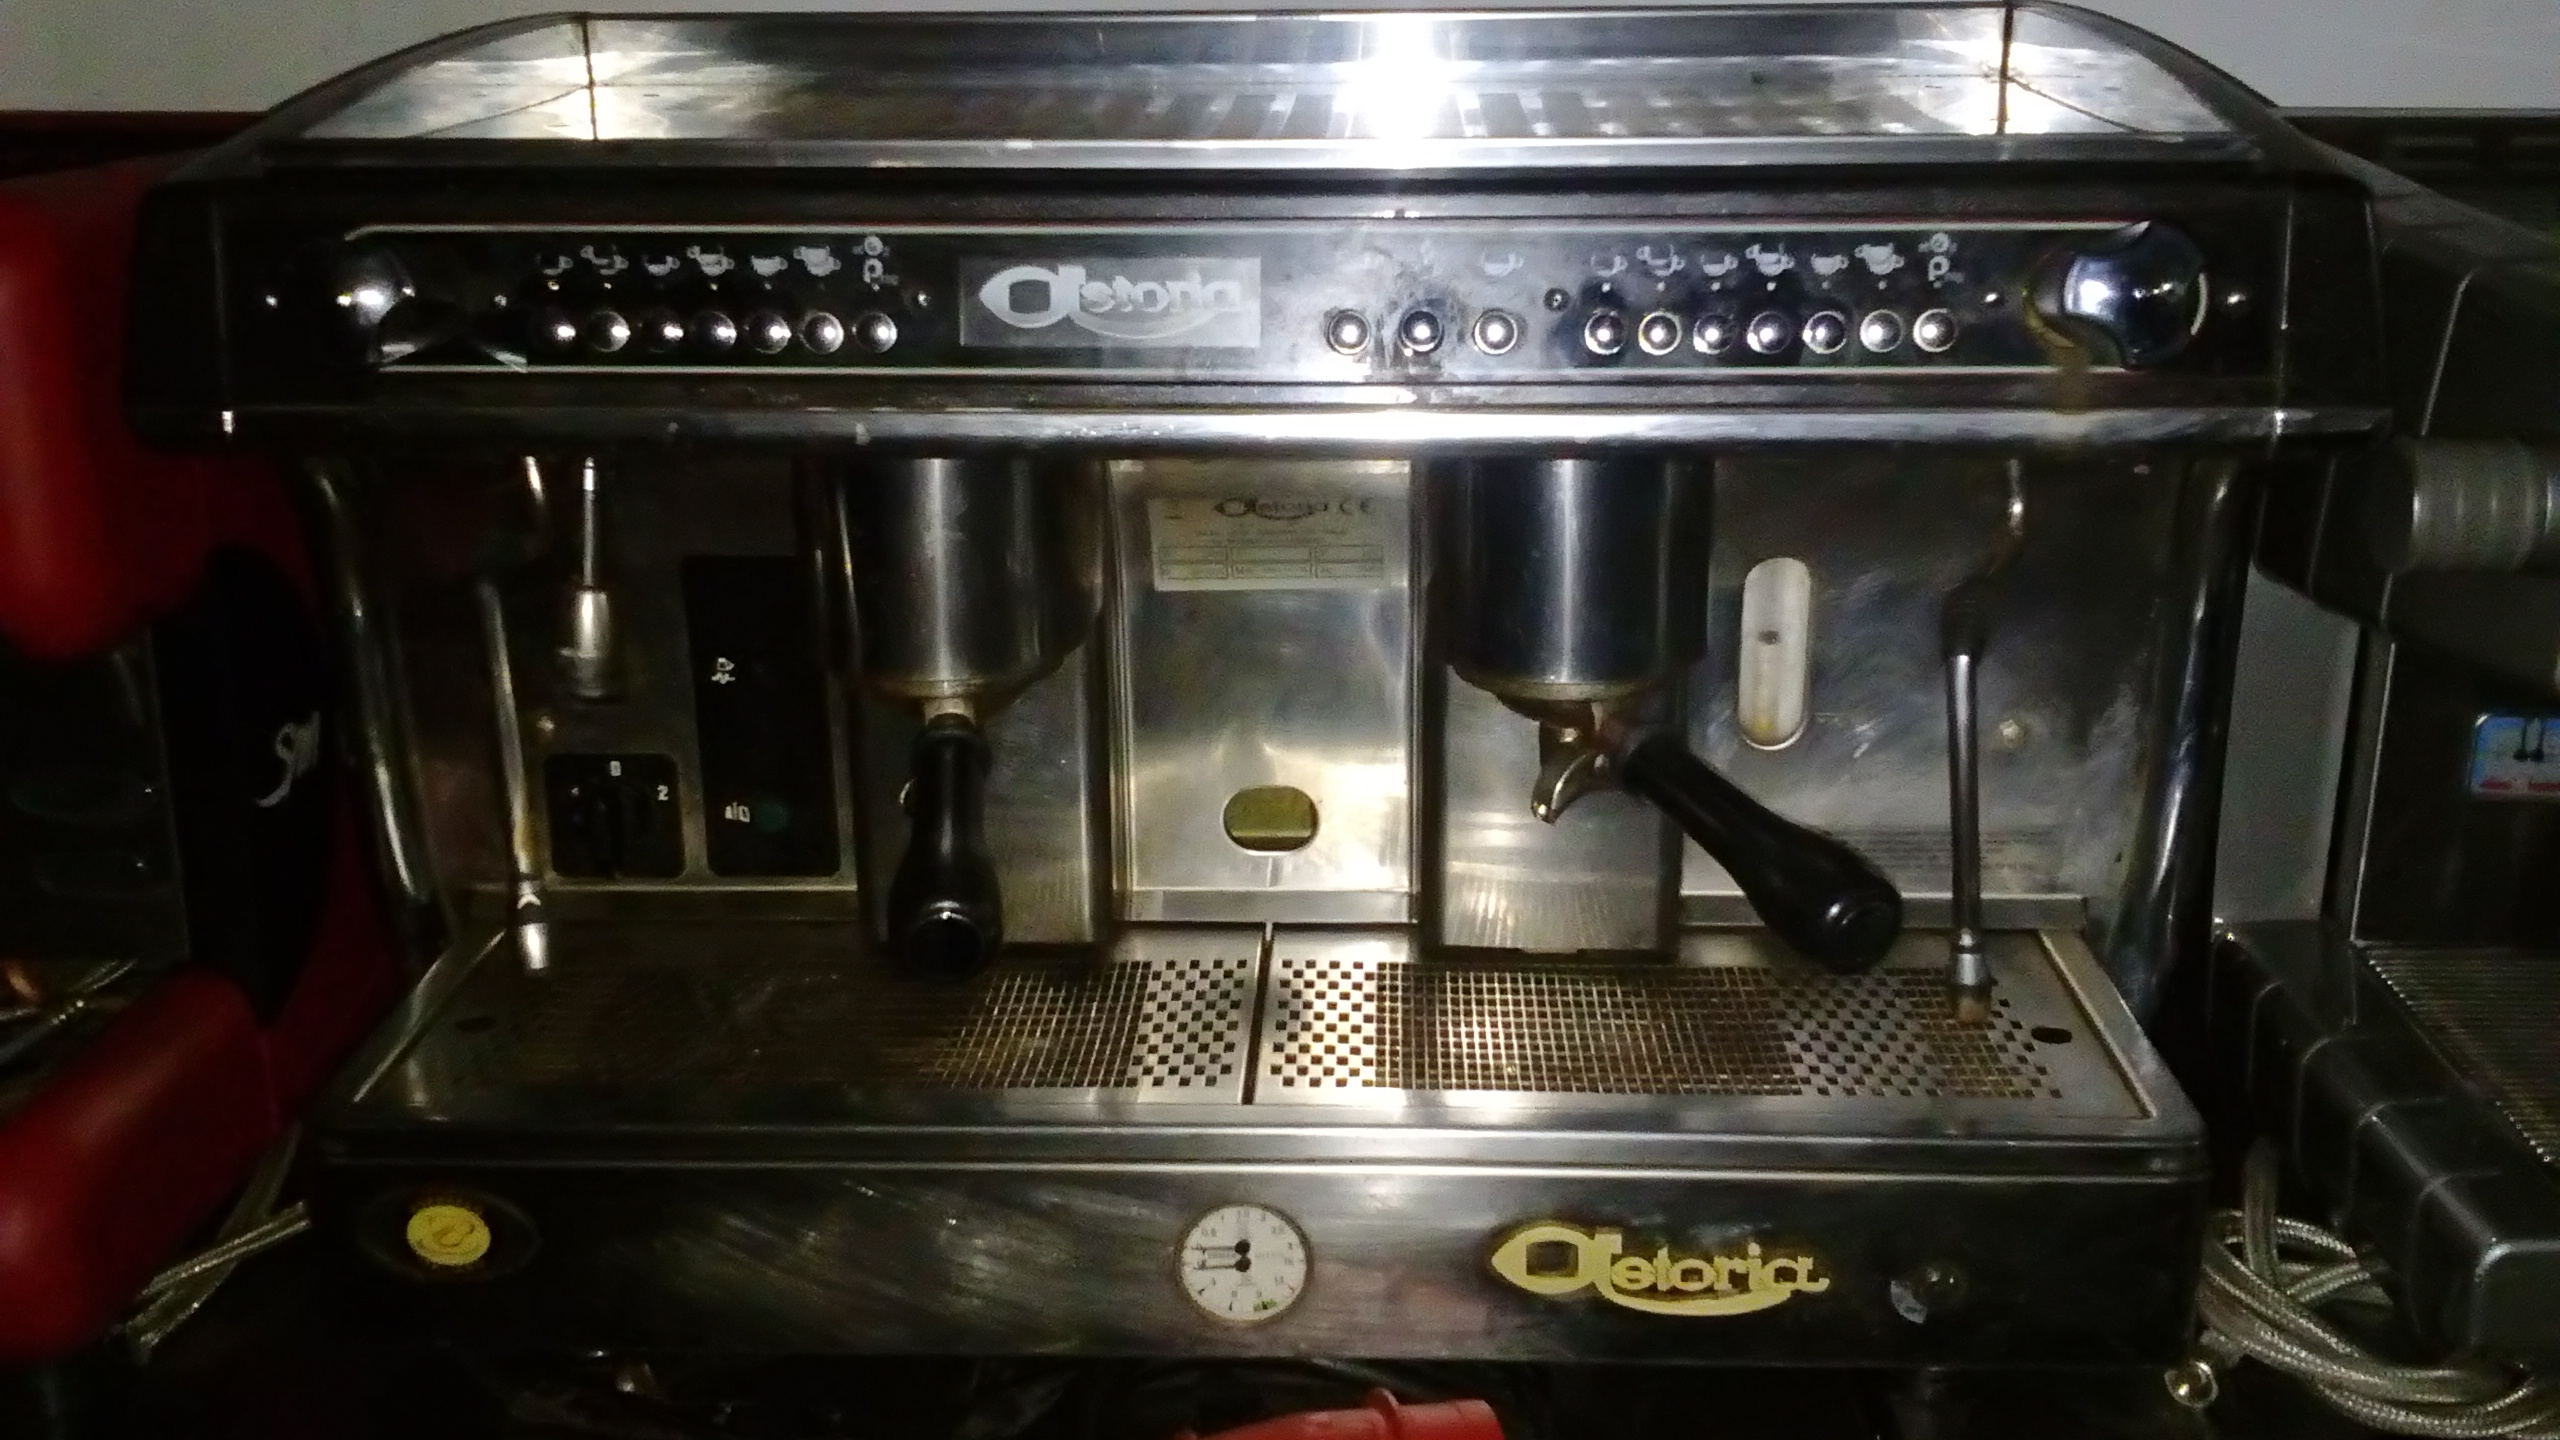 Μηχανή espresso διπλή ηλεκτρονική ΜΤΧ